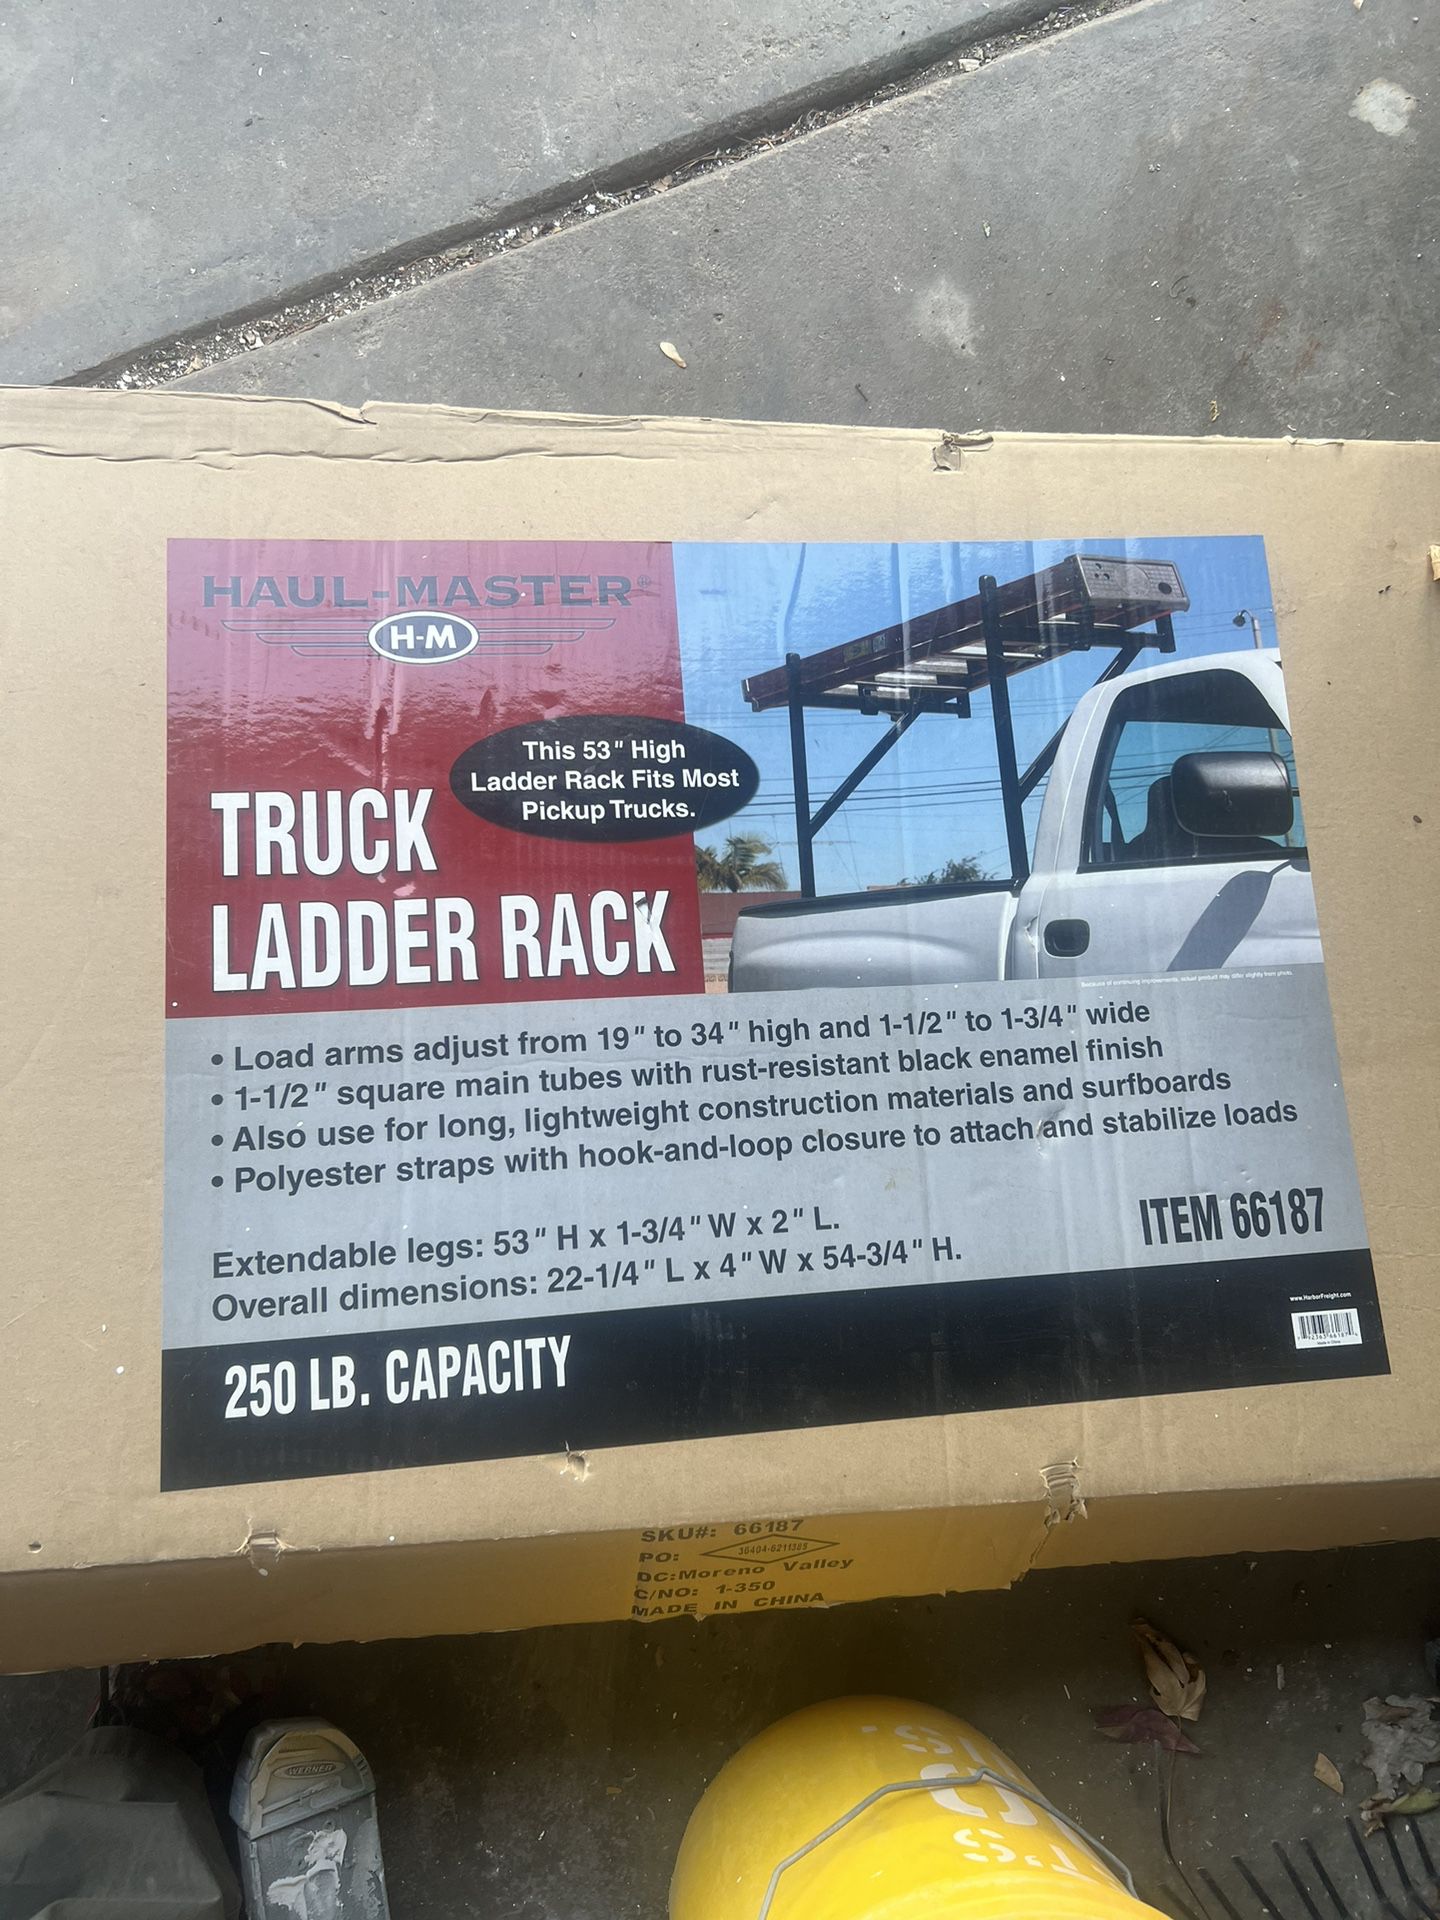 Haul-Master Truck Ladder Rack